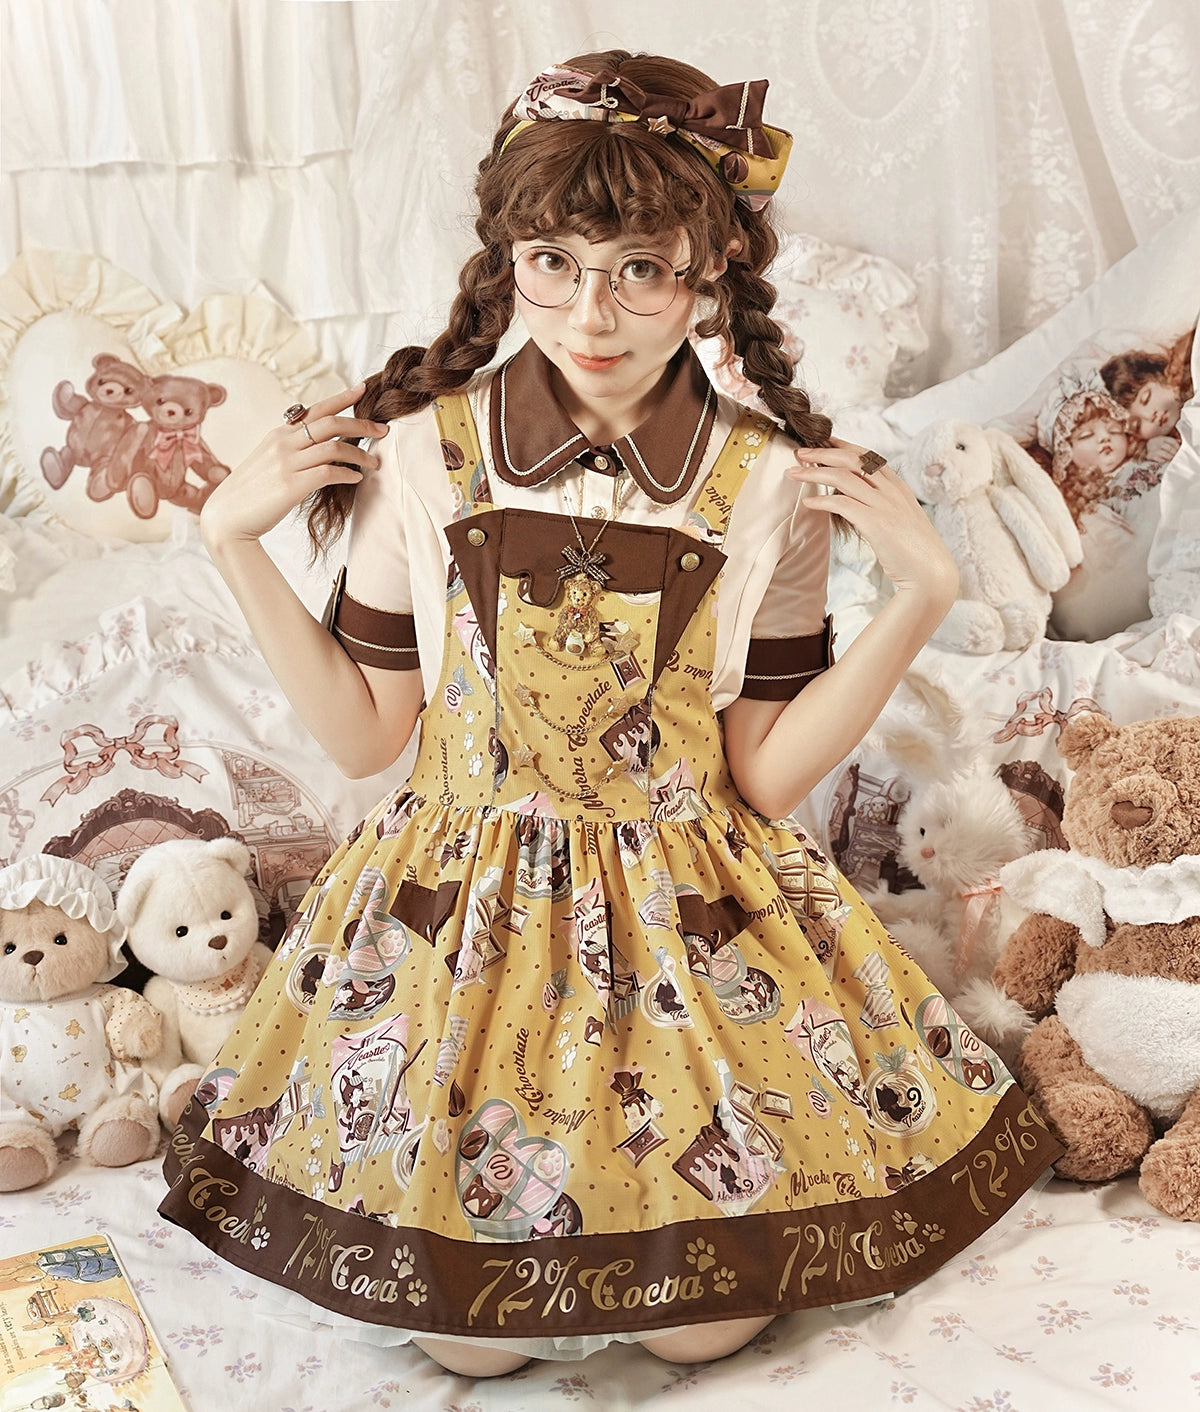 VCastle~Kawaii Lolita Shirt Summer Lolita Inner Blouse   